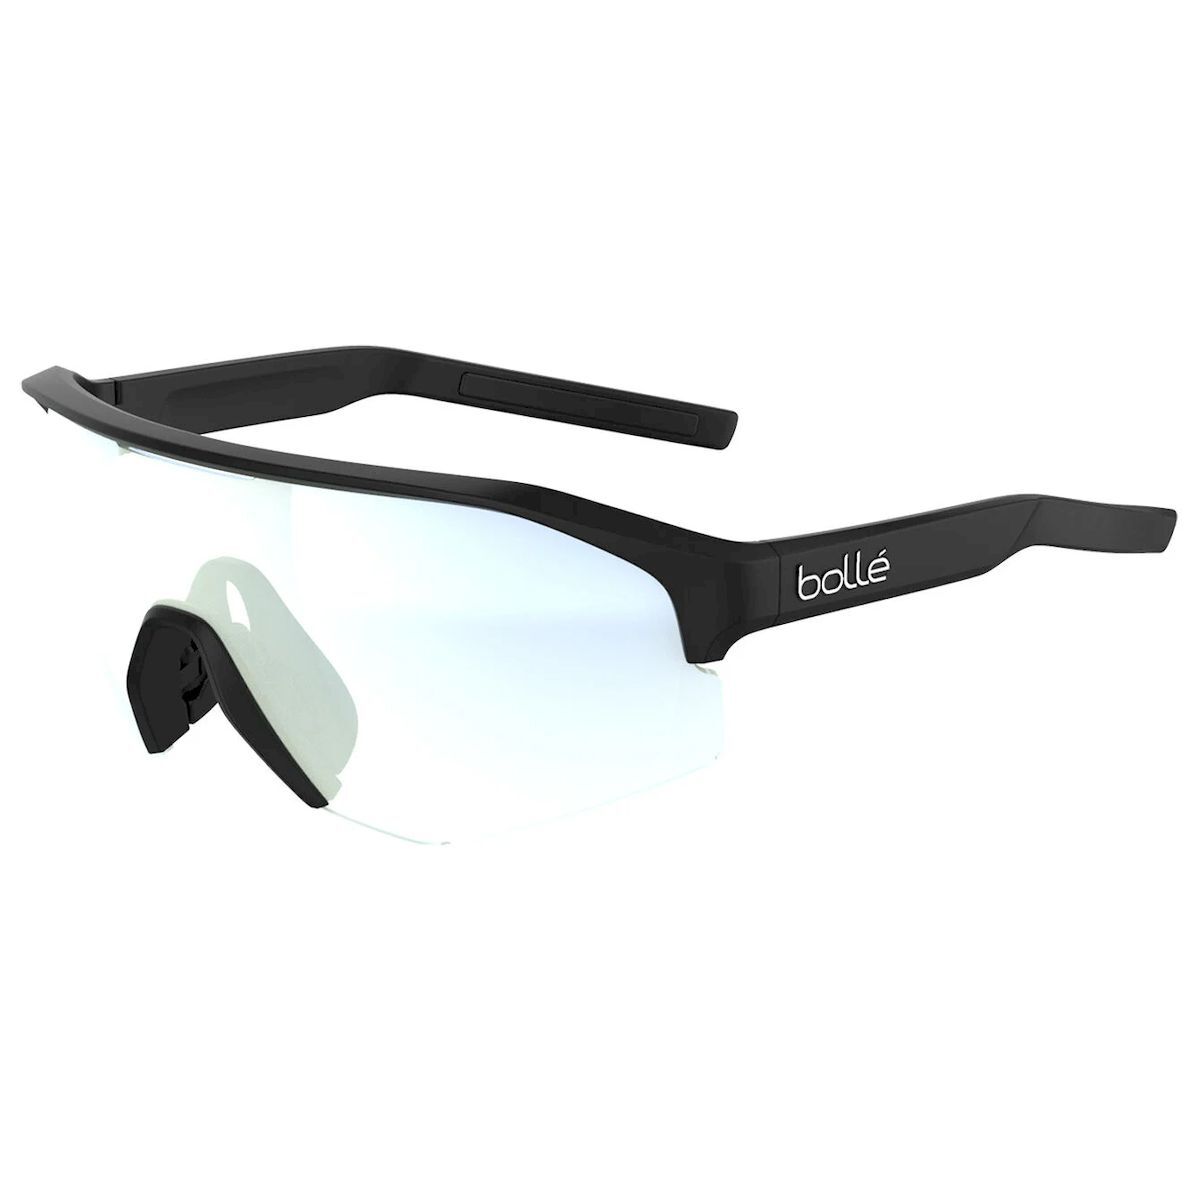 Bollé Lightshifter XL - Sunglasses